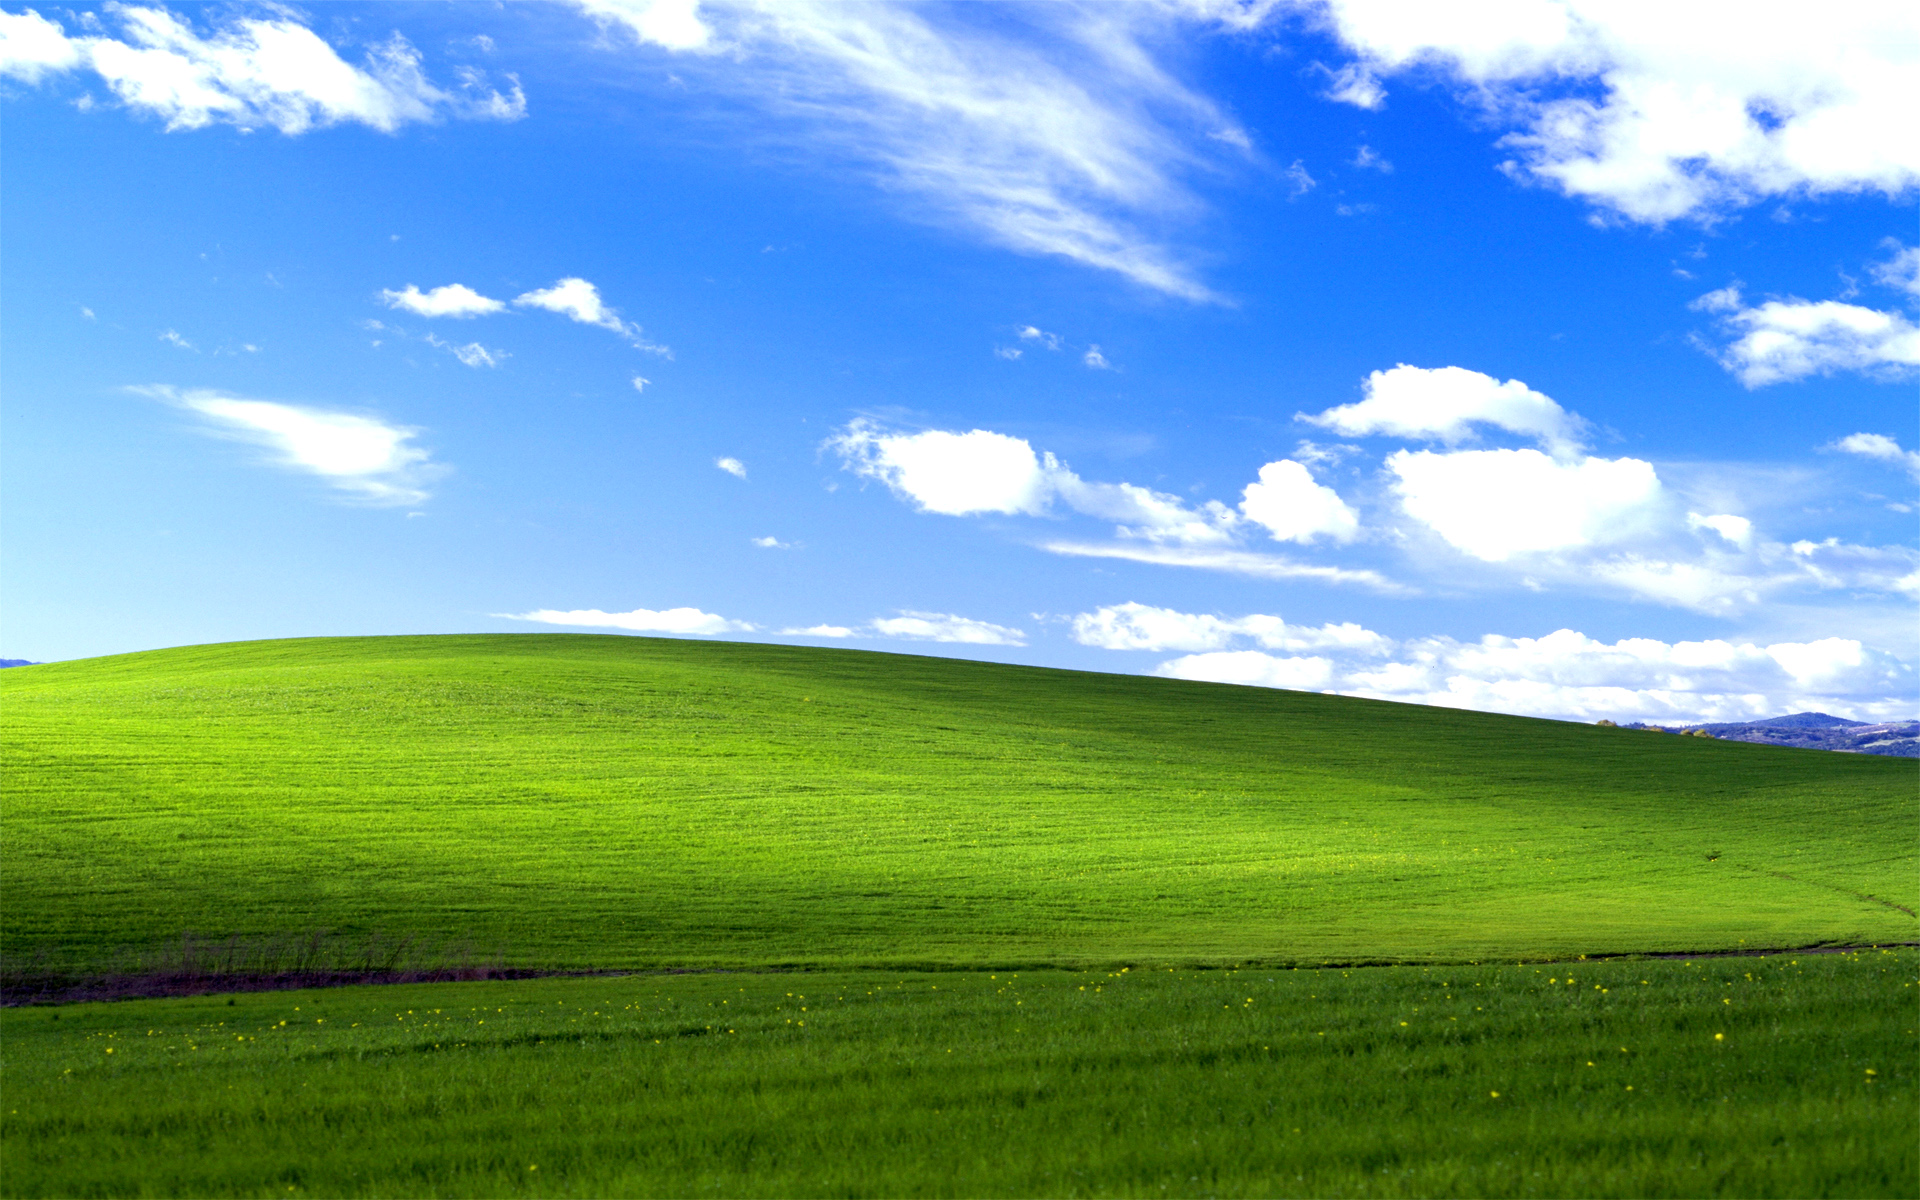 Tìm kiếm hình nền cho Windows XP không còn là vấn đề với một loạt các hình nền độc đáo, phong phú và ấn tượng. Gọi lên màn hình của bạn những bức ảnh tuyệt đẹp và tạo ra một góc làm việc mới với các hình nền được thiết kế đặc biệt cho Windows XP.